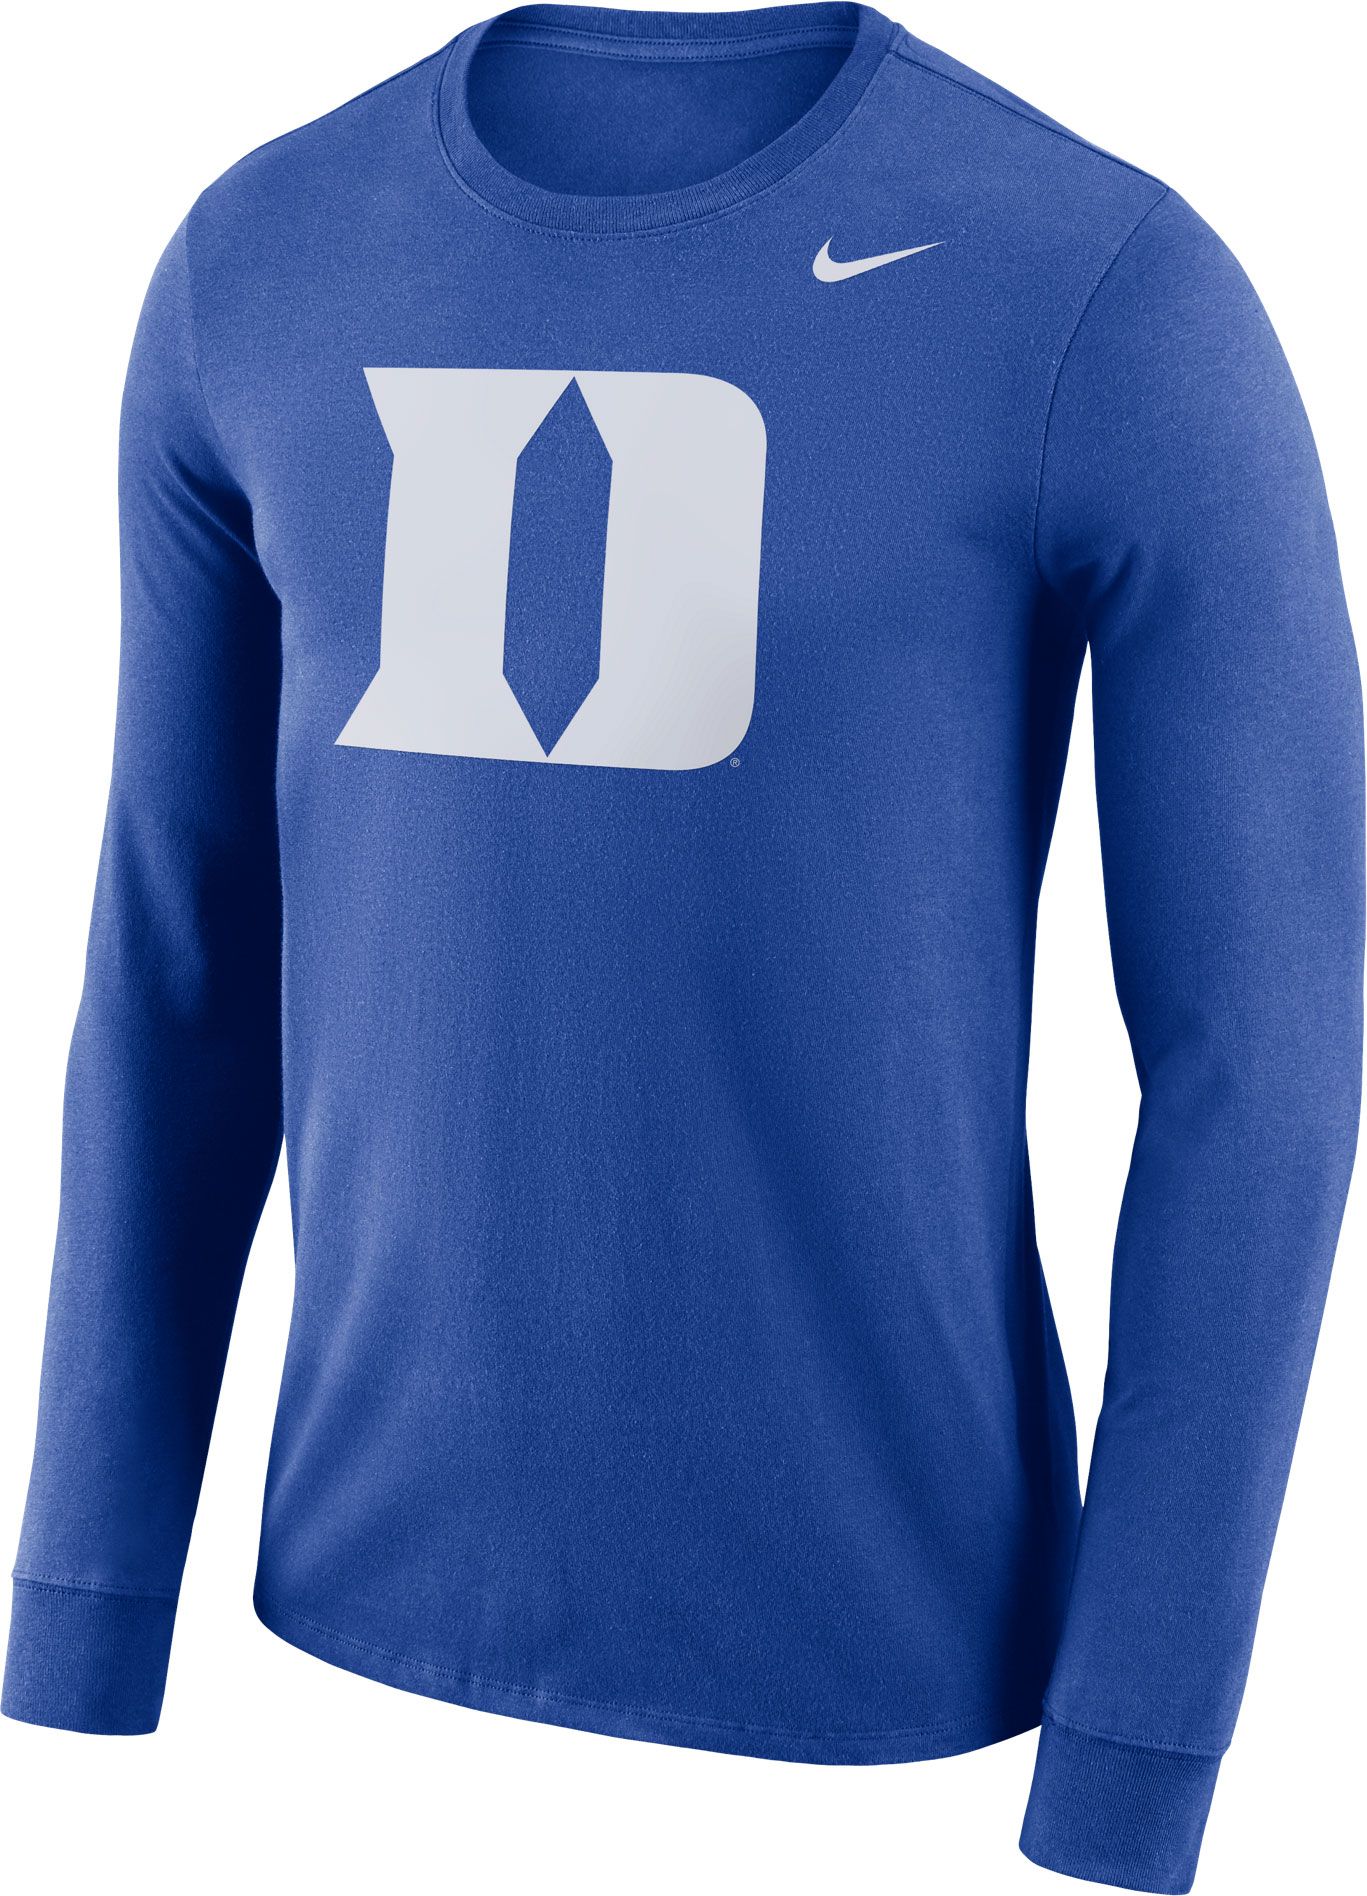 Duke Blue Devils Men's Apparel | DICK'S Sporting Goods